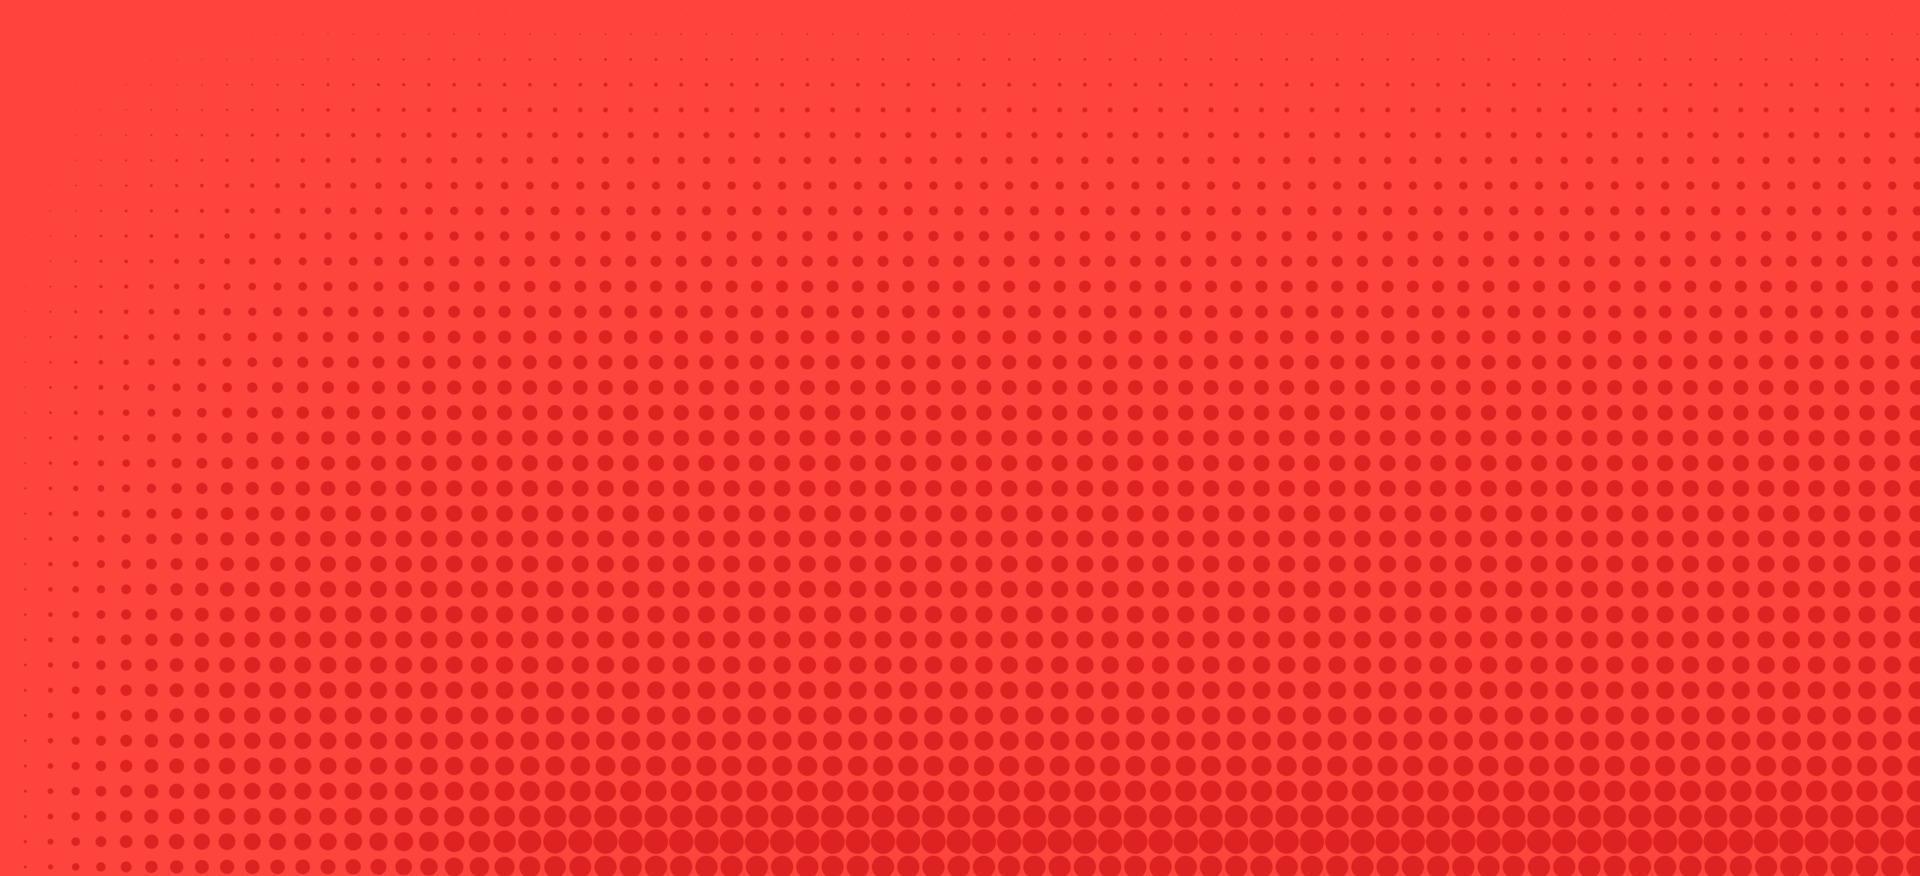 meio-tom em estilo abstrato. textura de vetor geométrico banner retro. impressão moderna. fundo vermelho. efeito de luz